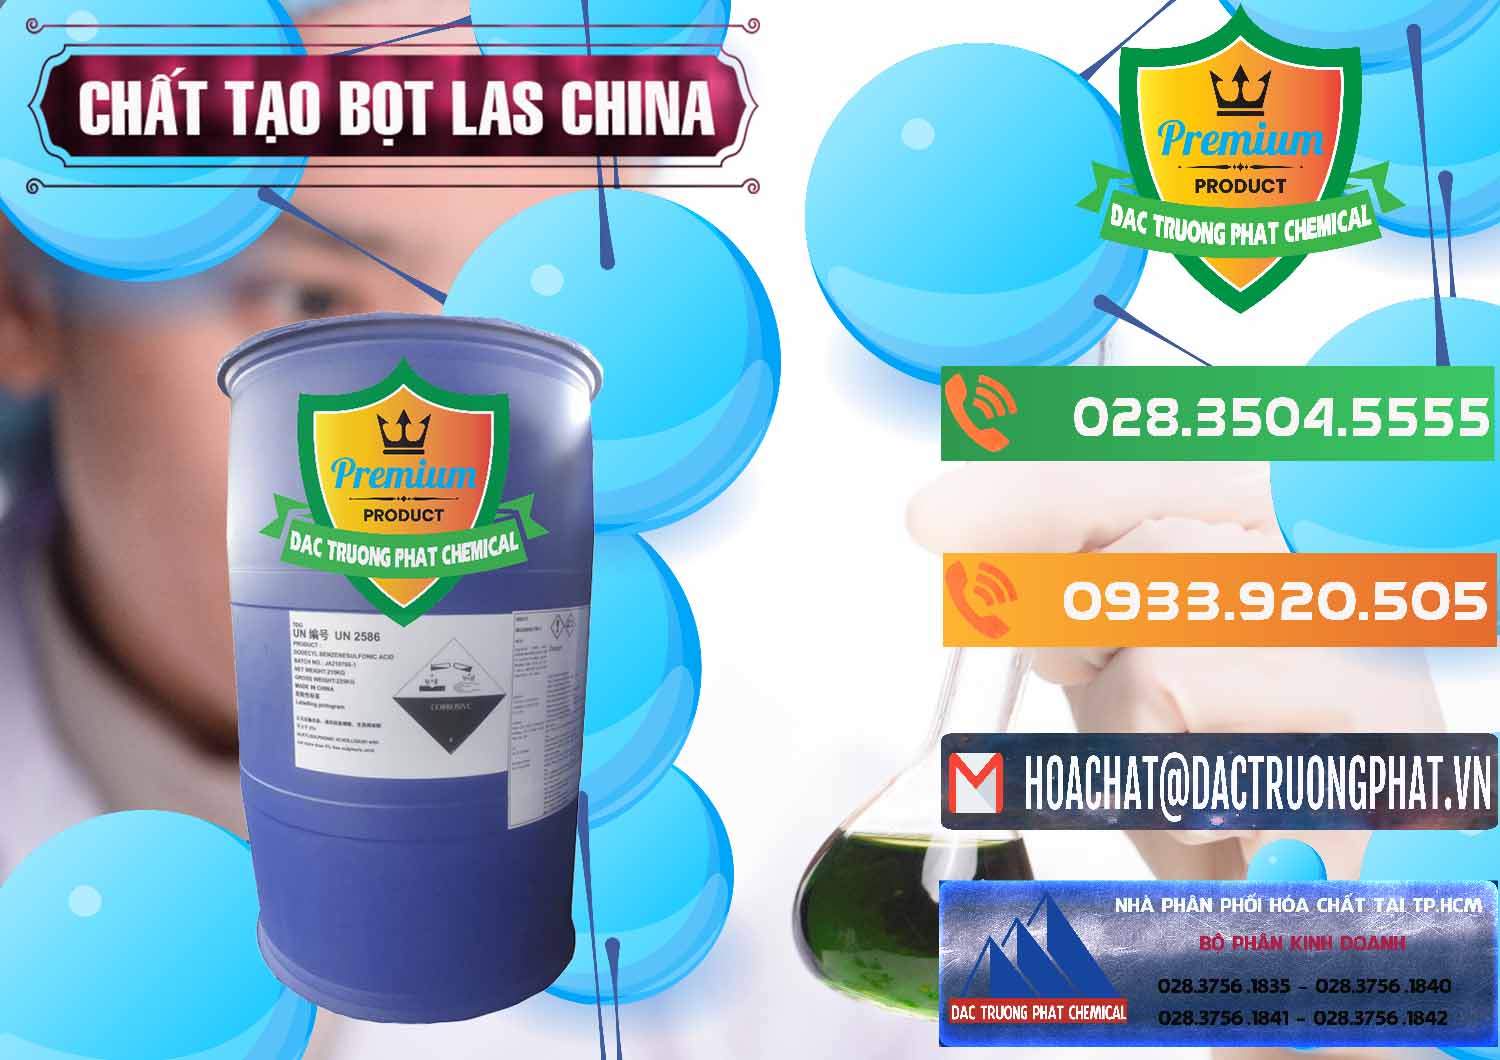 Cty chuyên kinh doanh - bán Chất tạo bọt Las Trung Quốc China - 0451 - Bán & cung cấp hóa chất tại TP.HCM - hoachatxulynuoc.com.vn